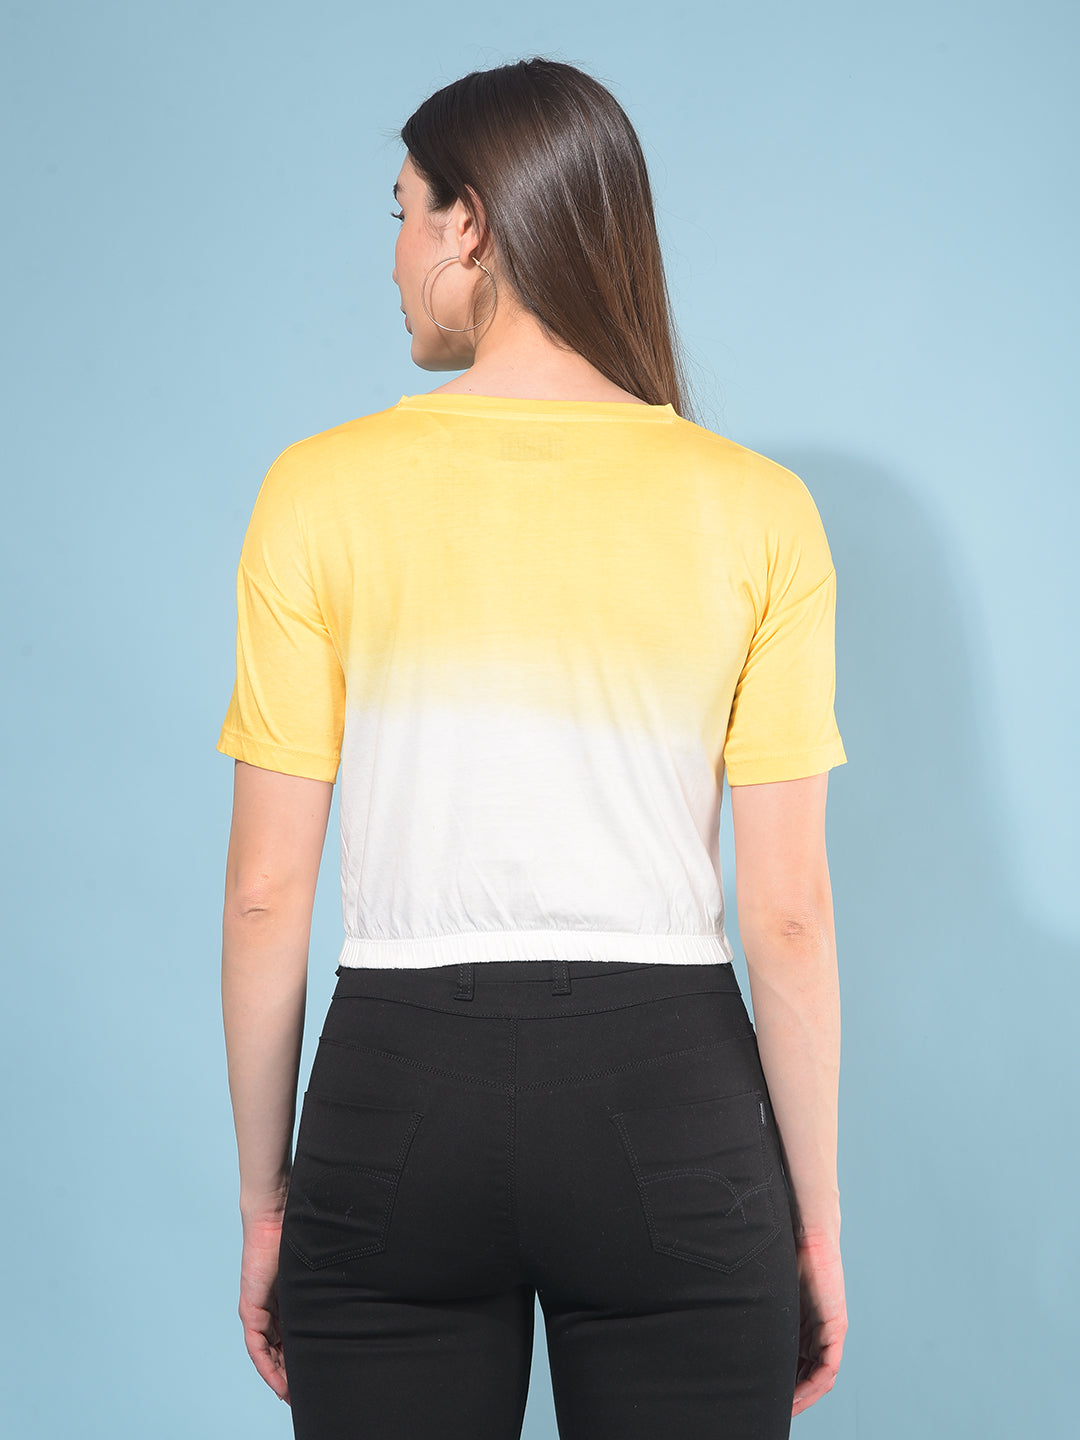 Yellow Graphic 100% Cotton T-Shirt-Women T-Shirts-Crimsoune Club